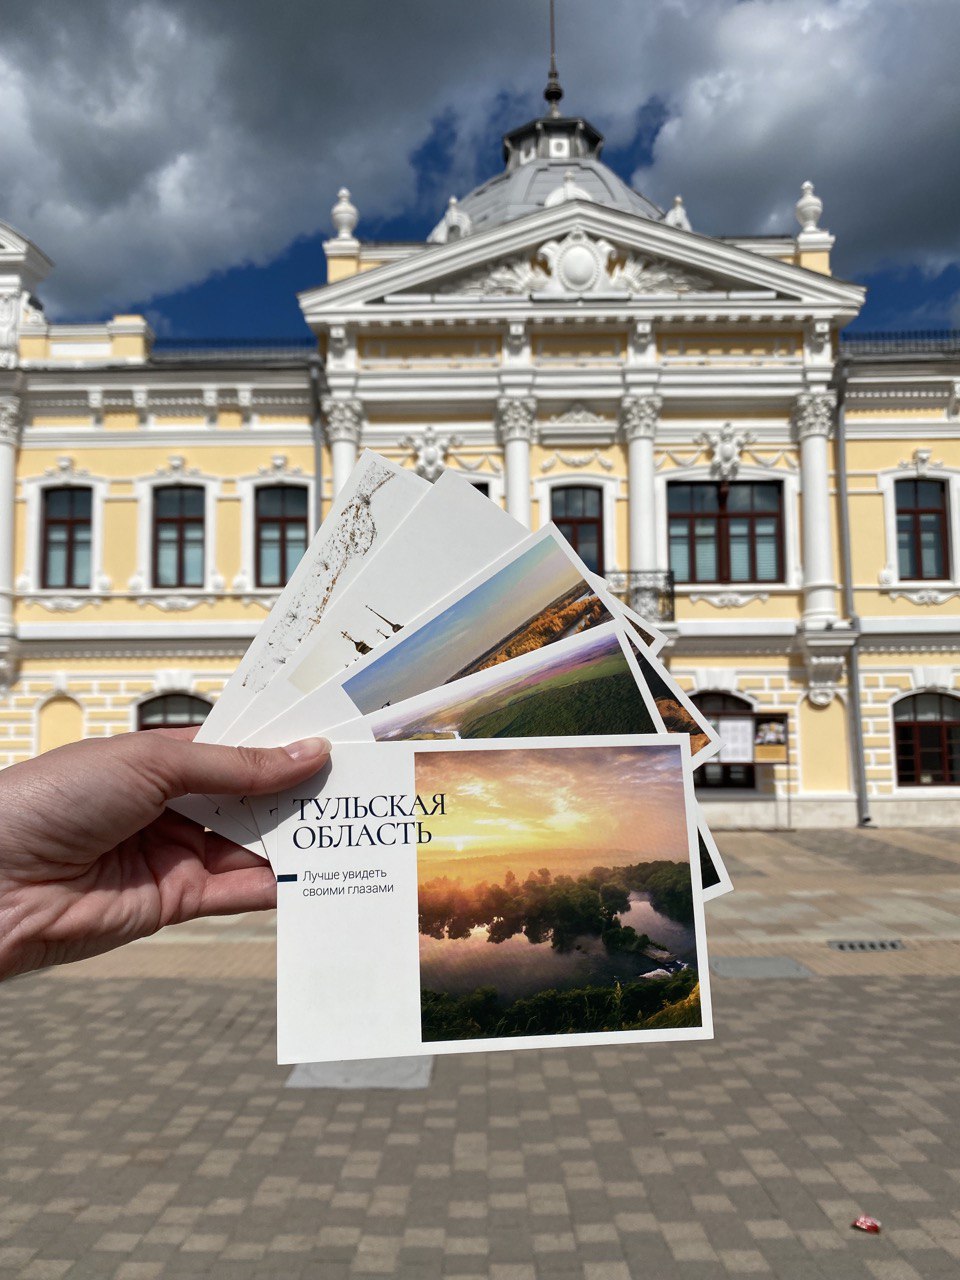 Виды Омска и области попали на почтовые открытки (Фото)